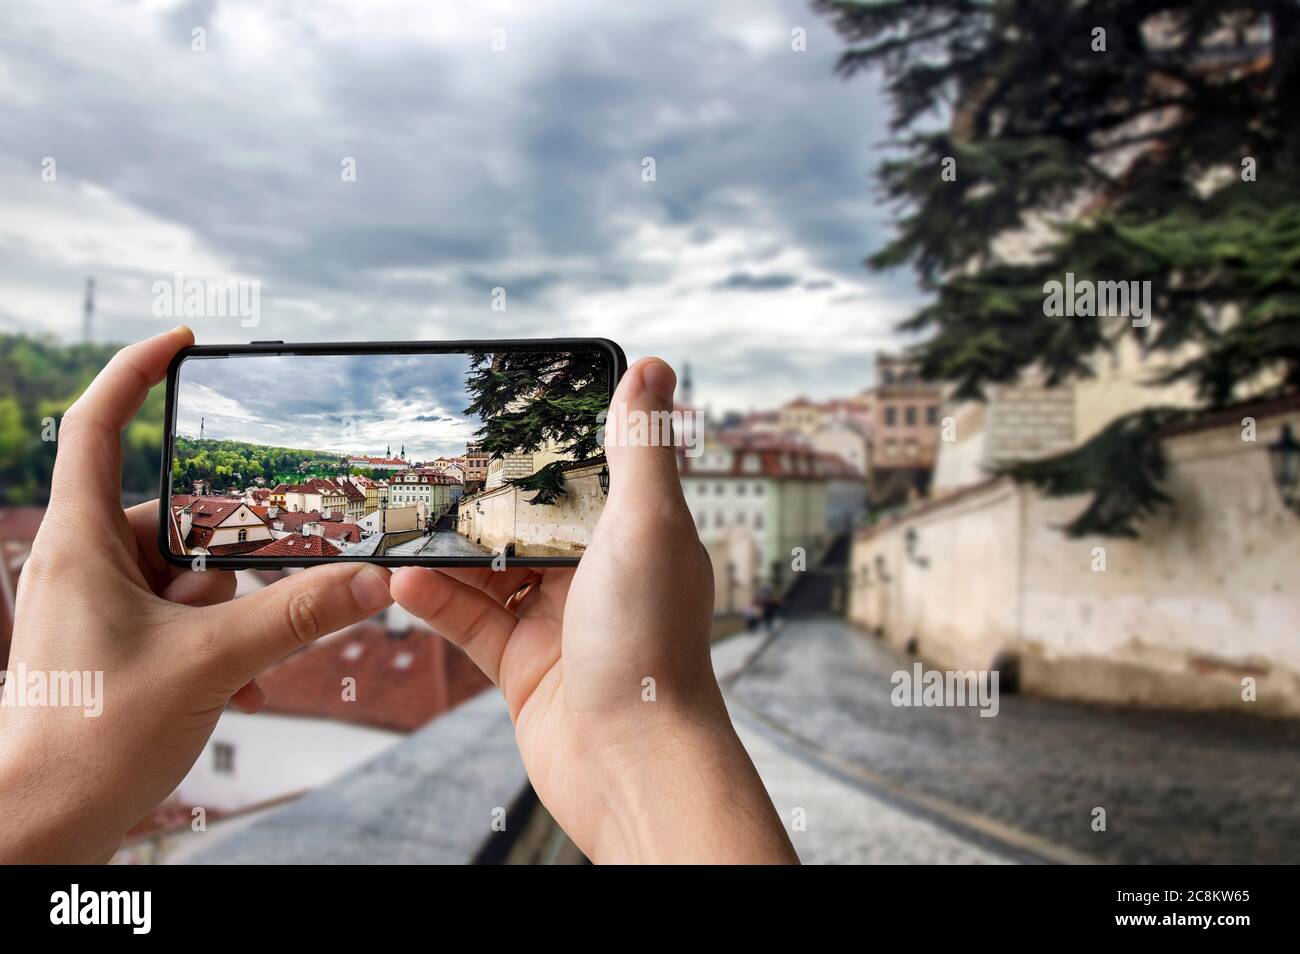 Turista che scatta foto della vista della strada a Praga, Repubblica Ceca. Uomo che tiene il telefono e fotografare la strada con una splendida vista sulla città storica Foto Stock